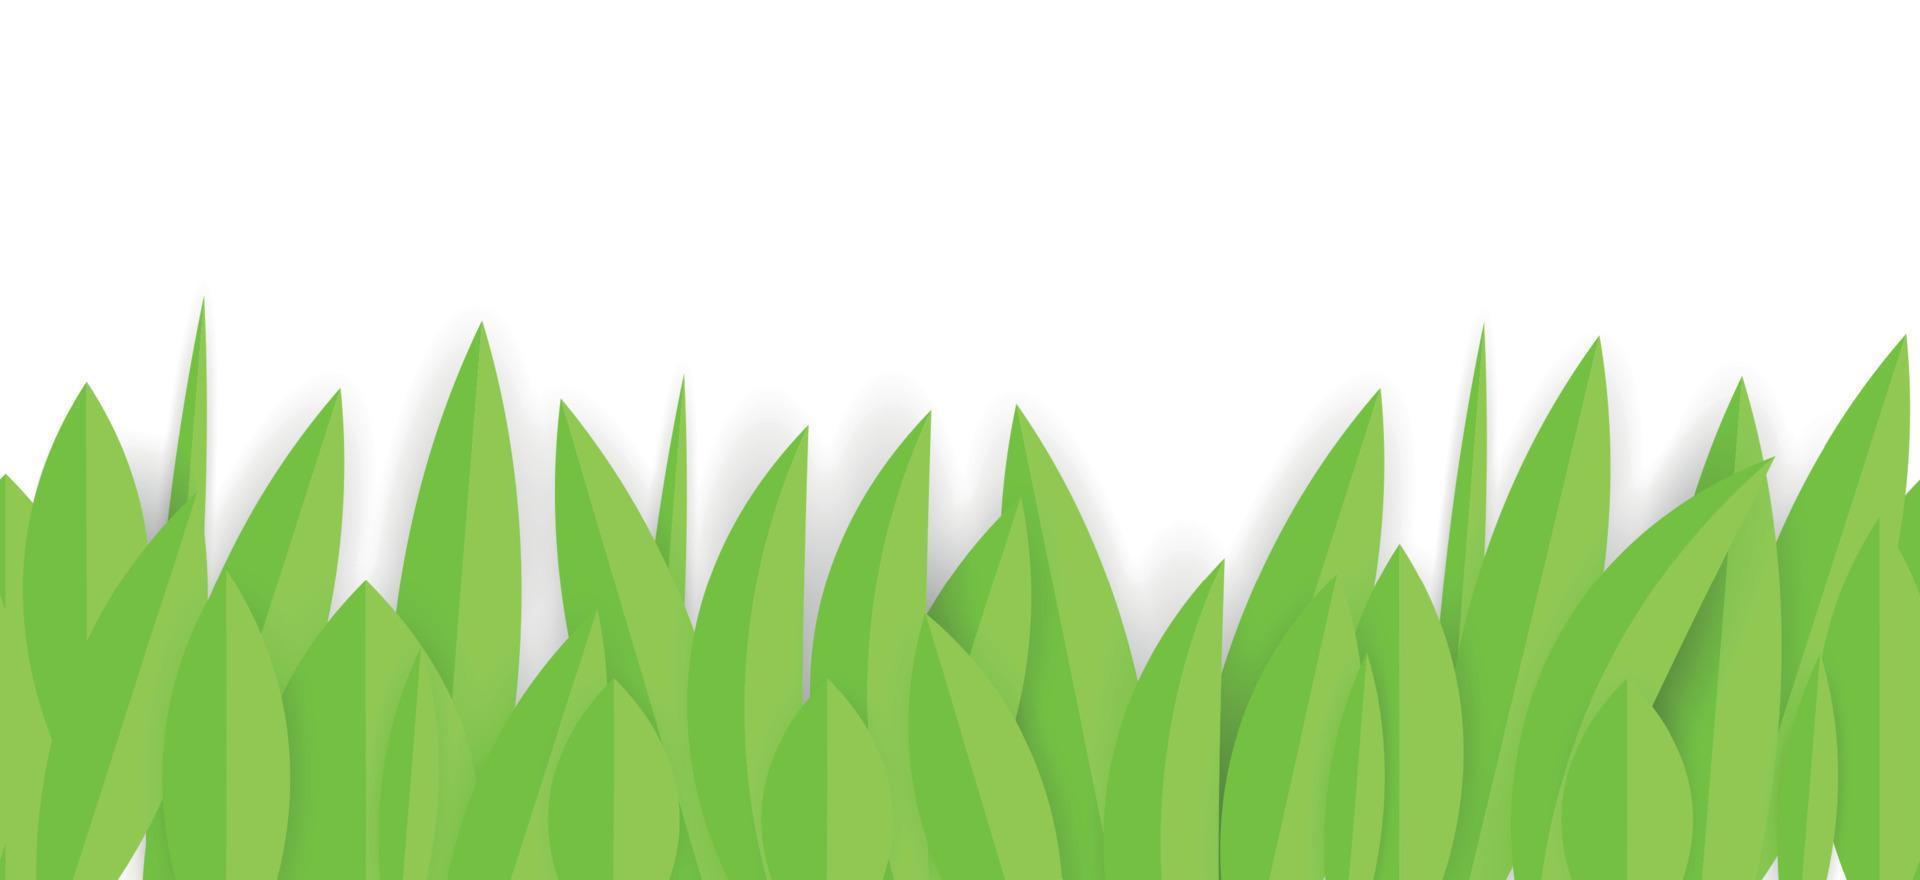 groenboek gras horizontale naadloze boordmotief. vector illustratie